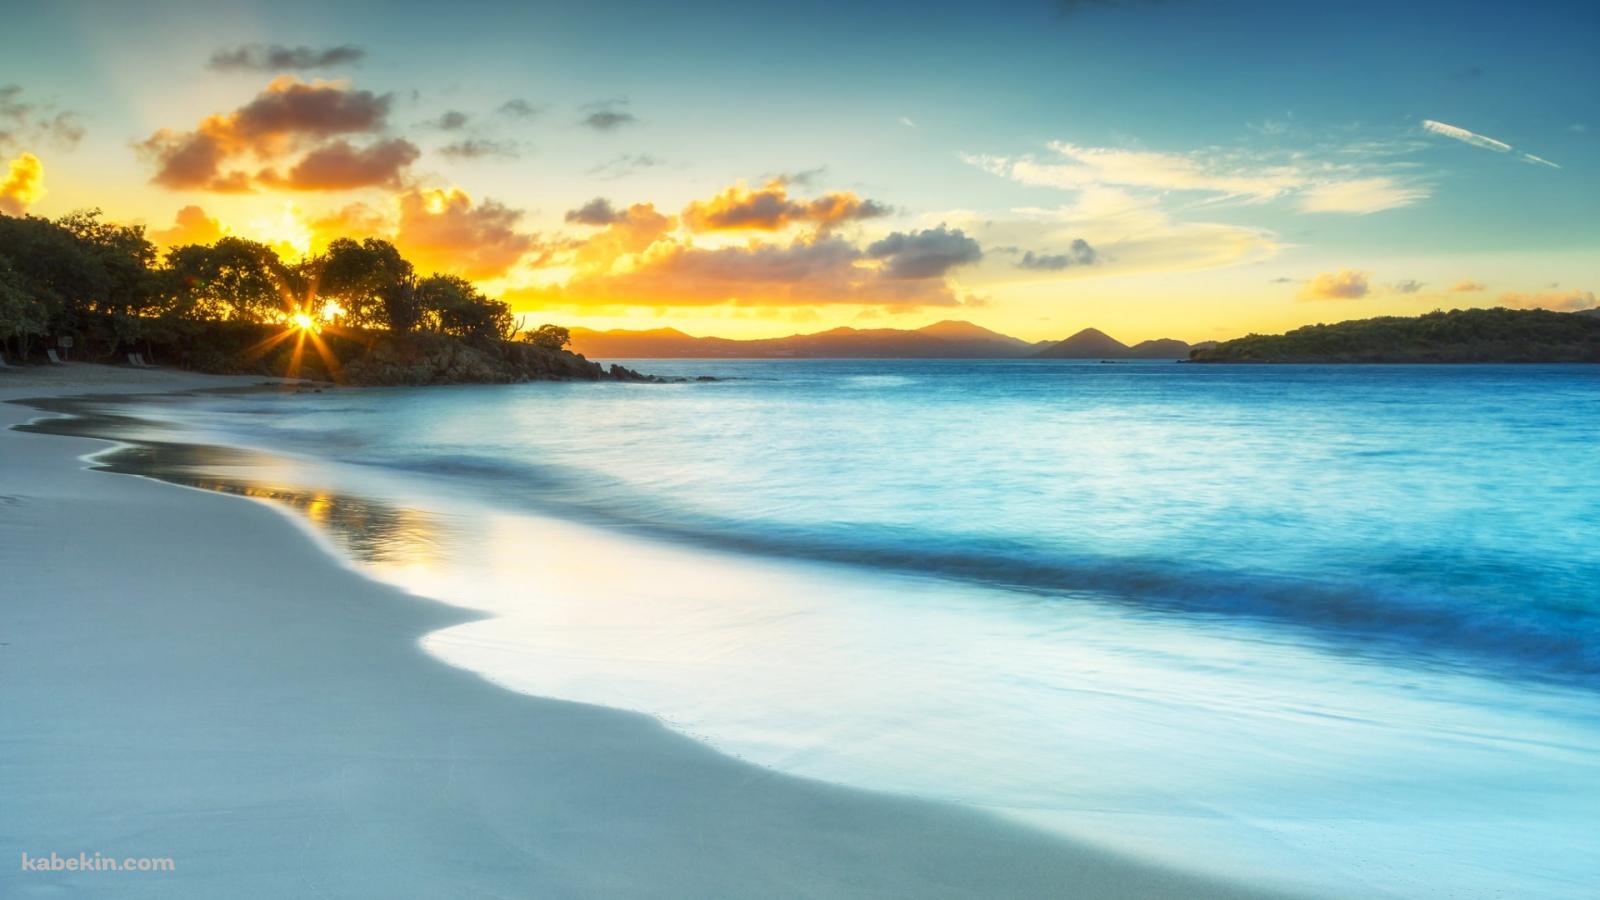 ヴァージン諸島の海岸の壁紙(1600px x 900px) 高画質 PC・デスクトップ用